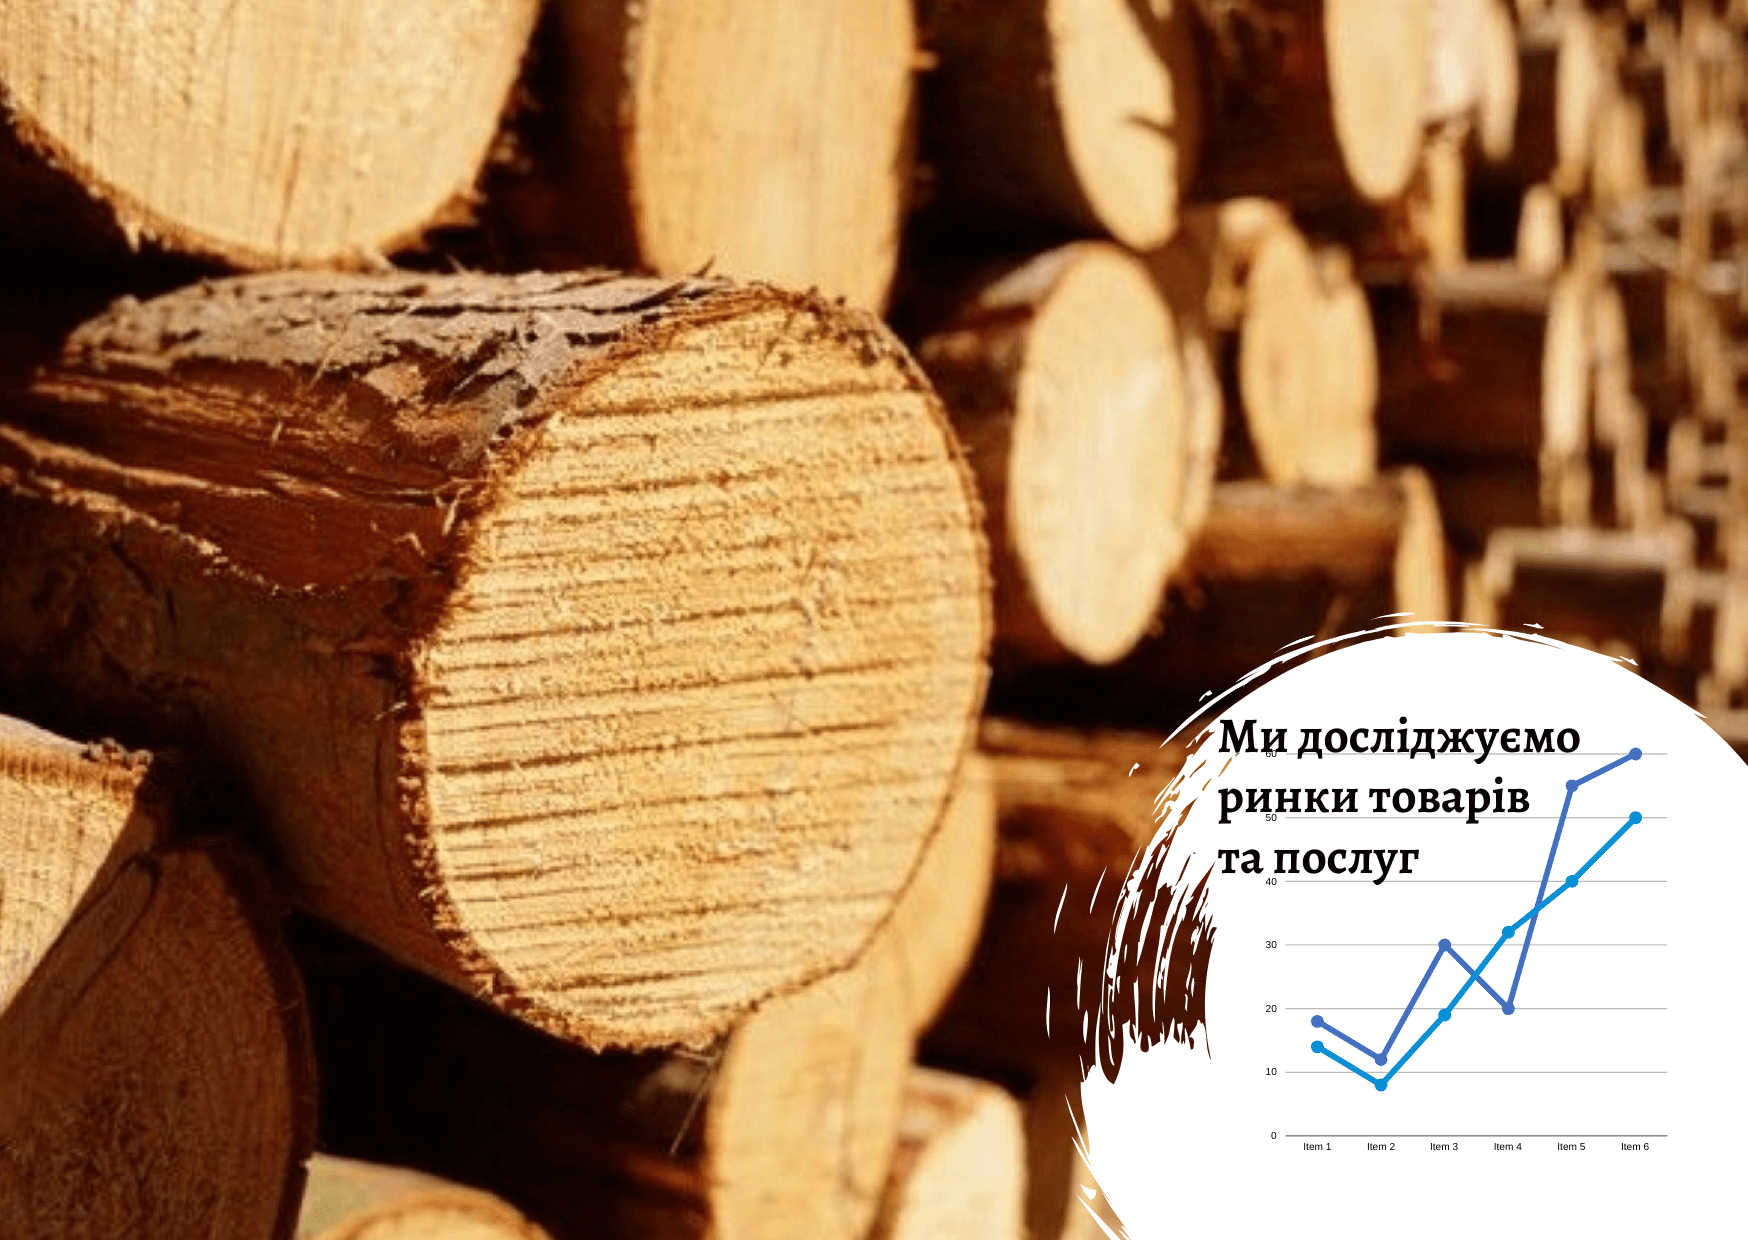 Рынок лесозаготовки в Украине: текущее состояние